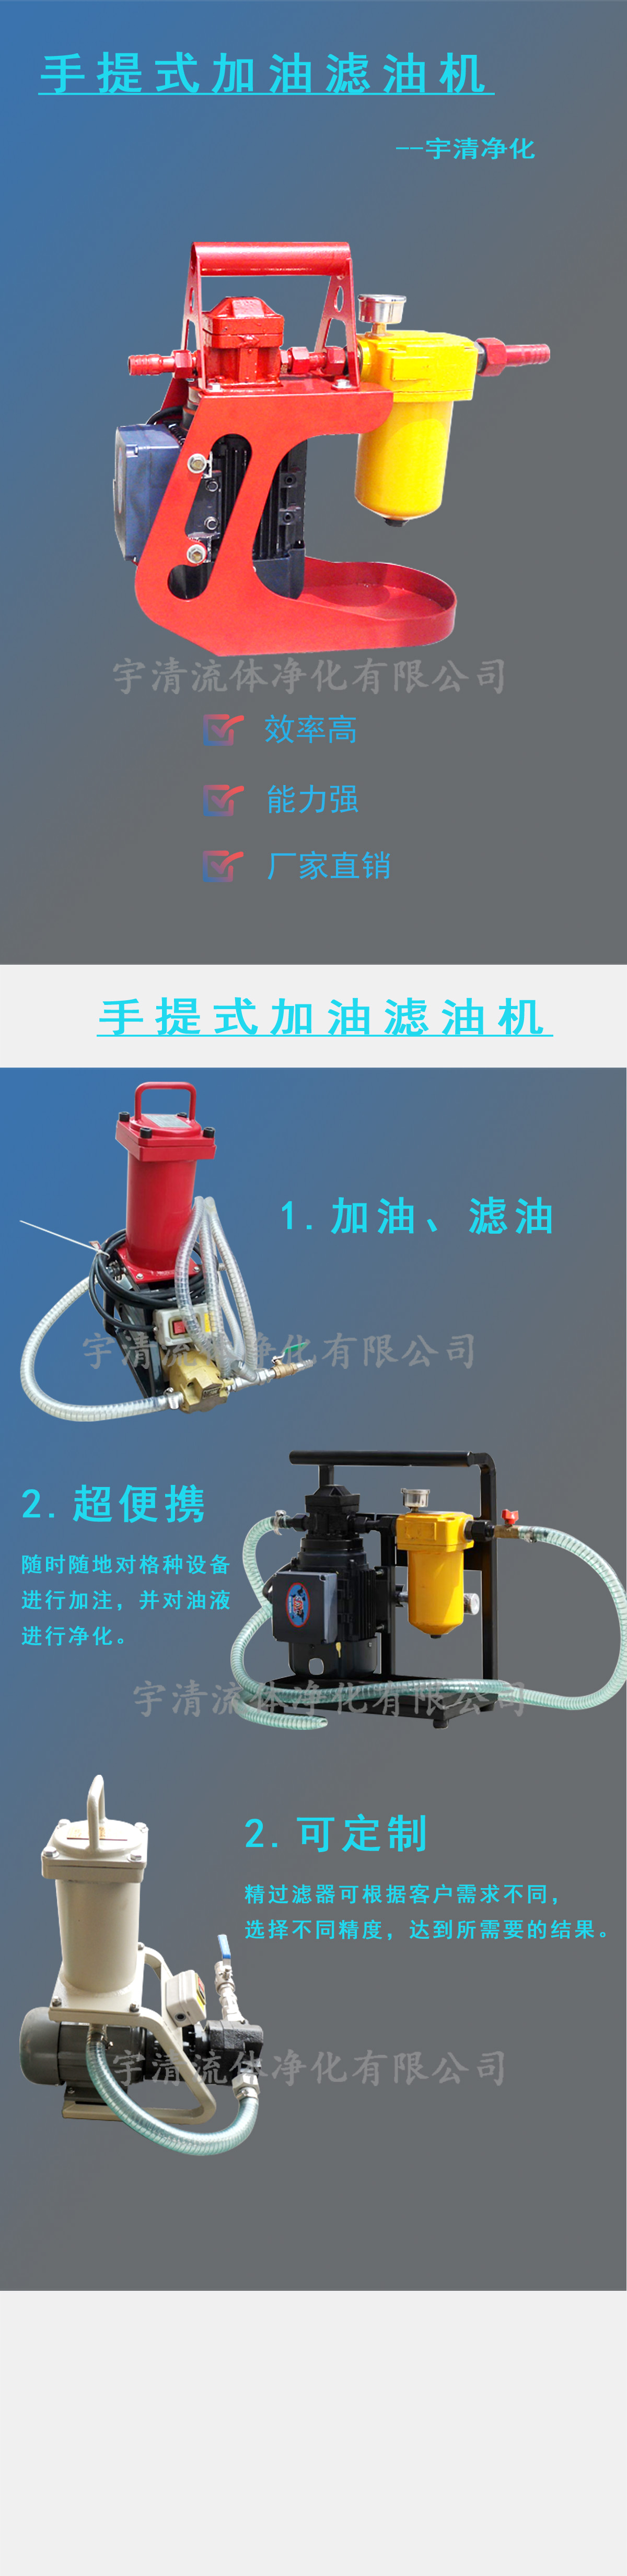 便携式手提加油滤油机(图1)